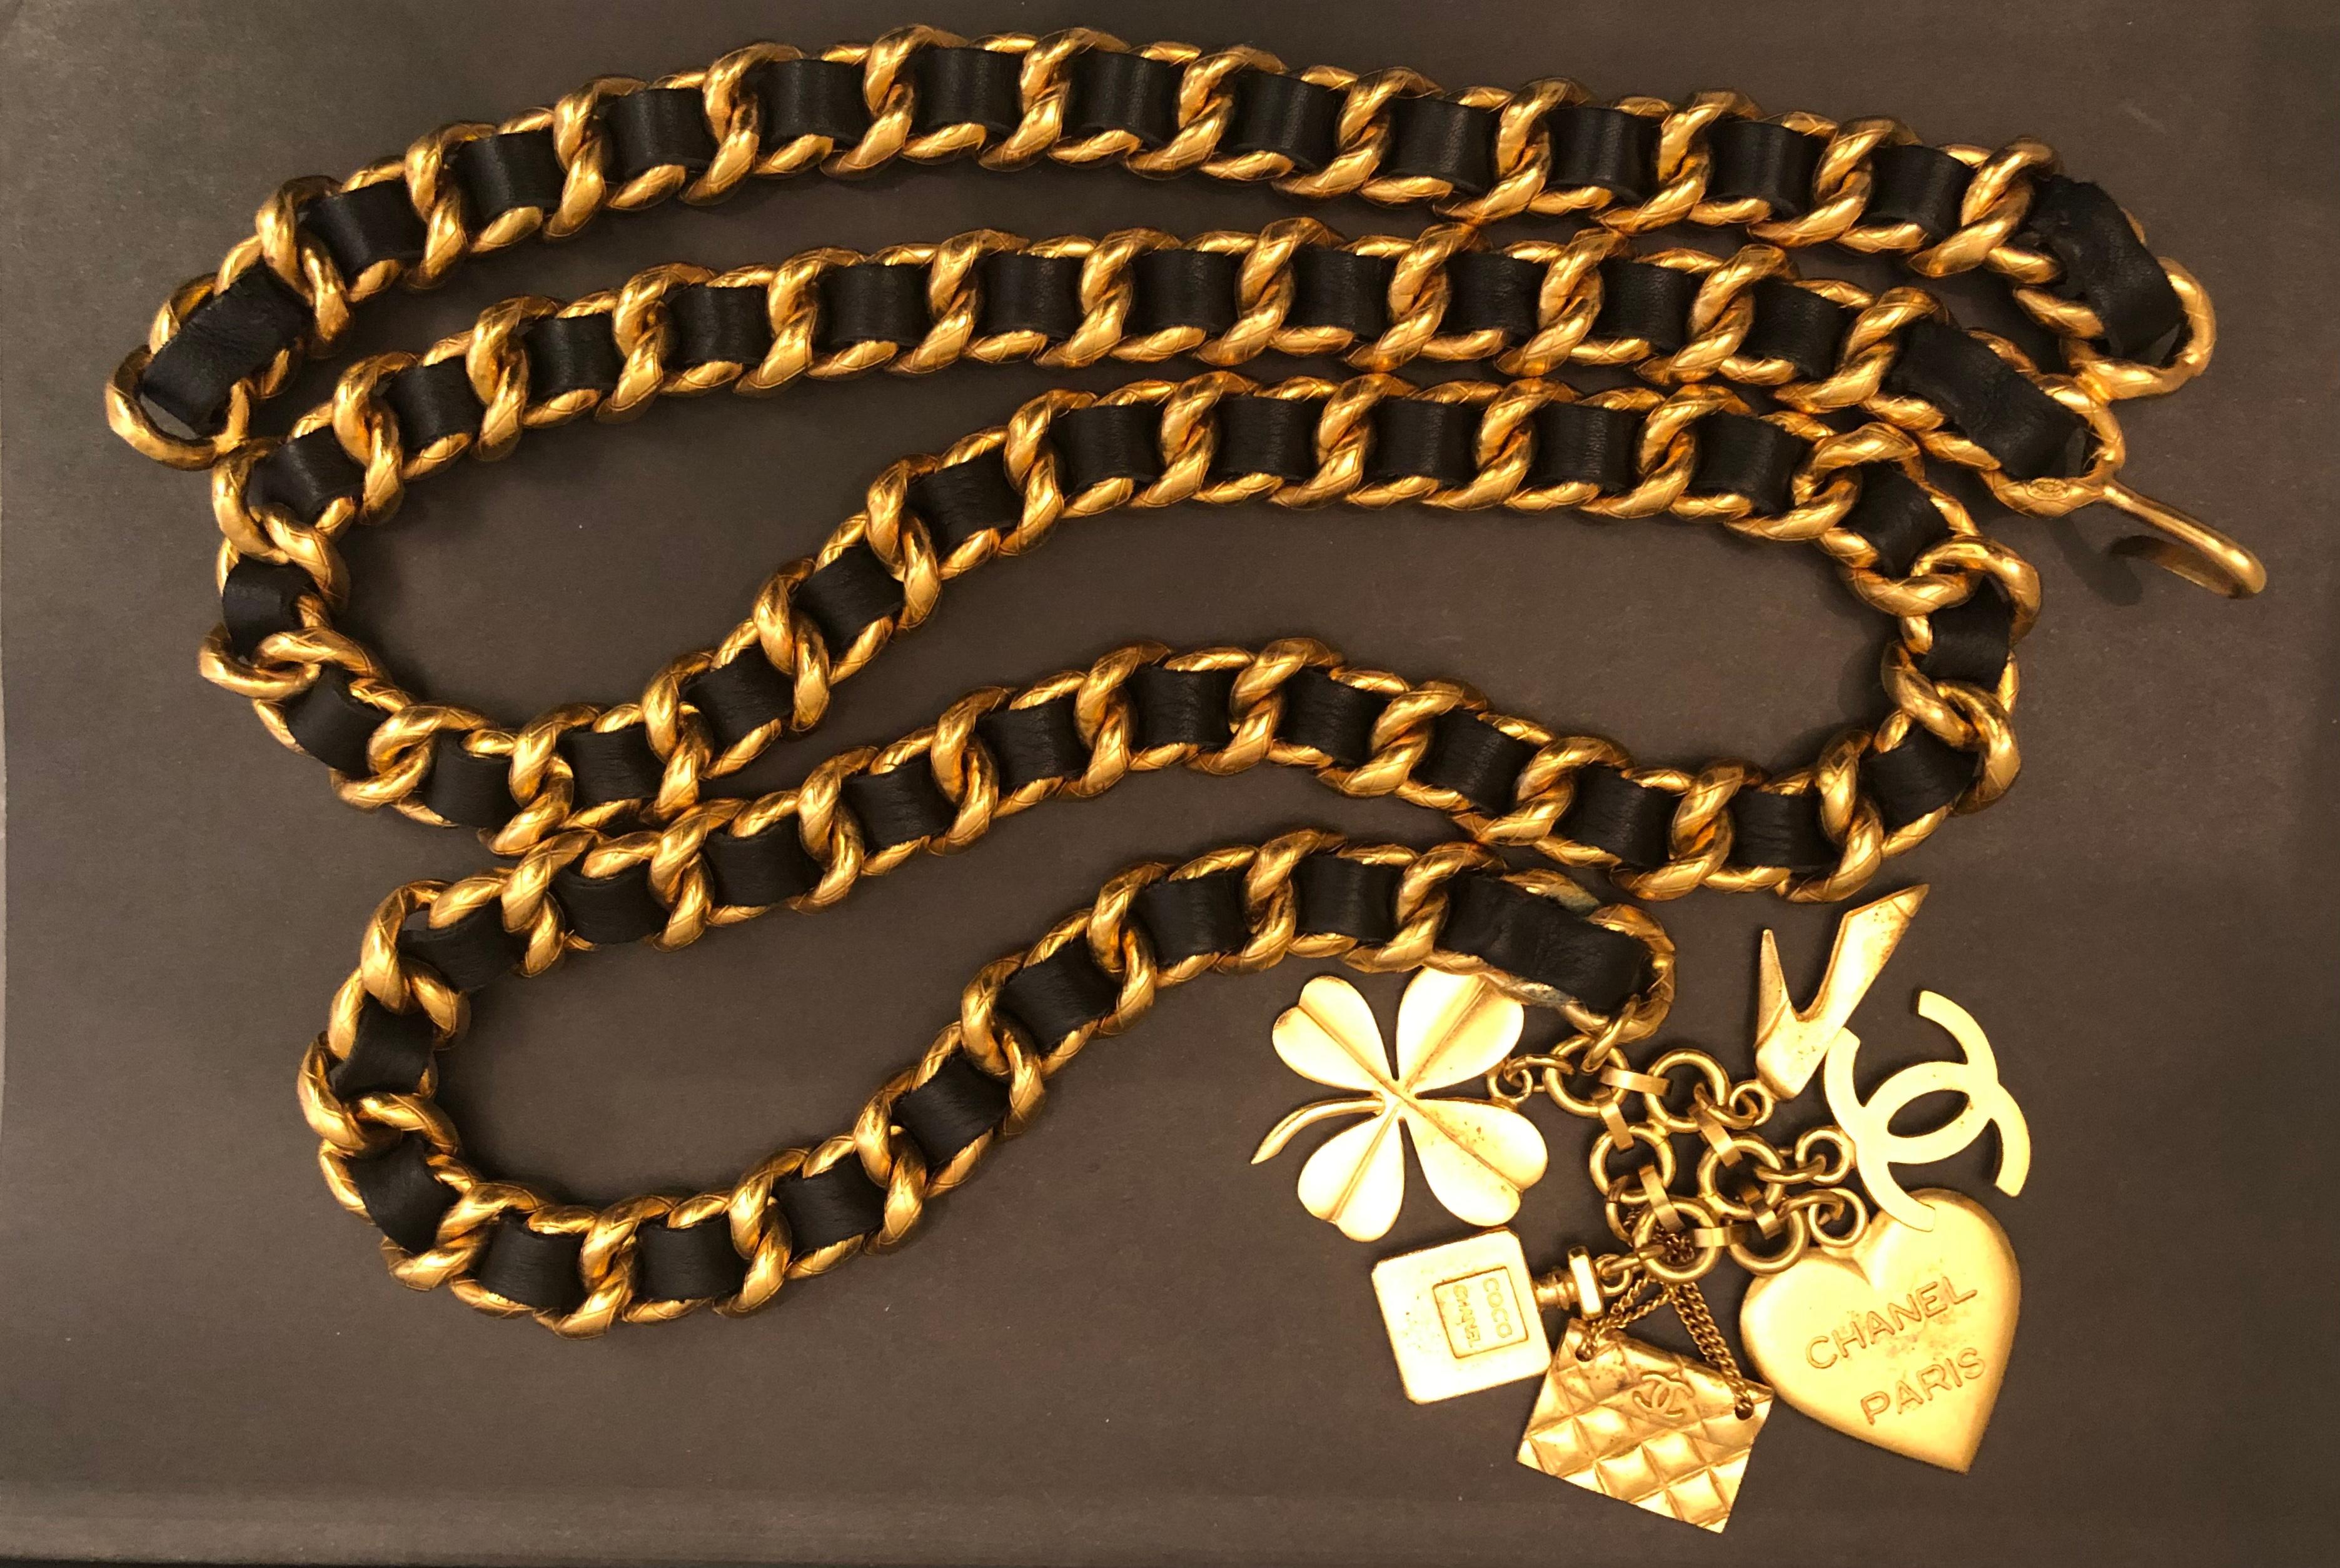 Cette ceinture vintage Chanel en chaîne dorée est faite d'une solide chaîne dorée au motif matelassé, entrelacée de cuir noir et ornée de six breloques emblématiques de Chanel. Estampillé Chanel 95A fabriqué en France. Fermeture à crochet réglable.